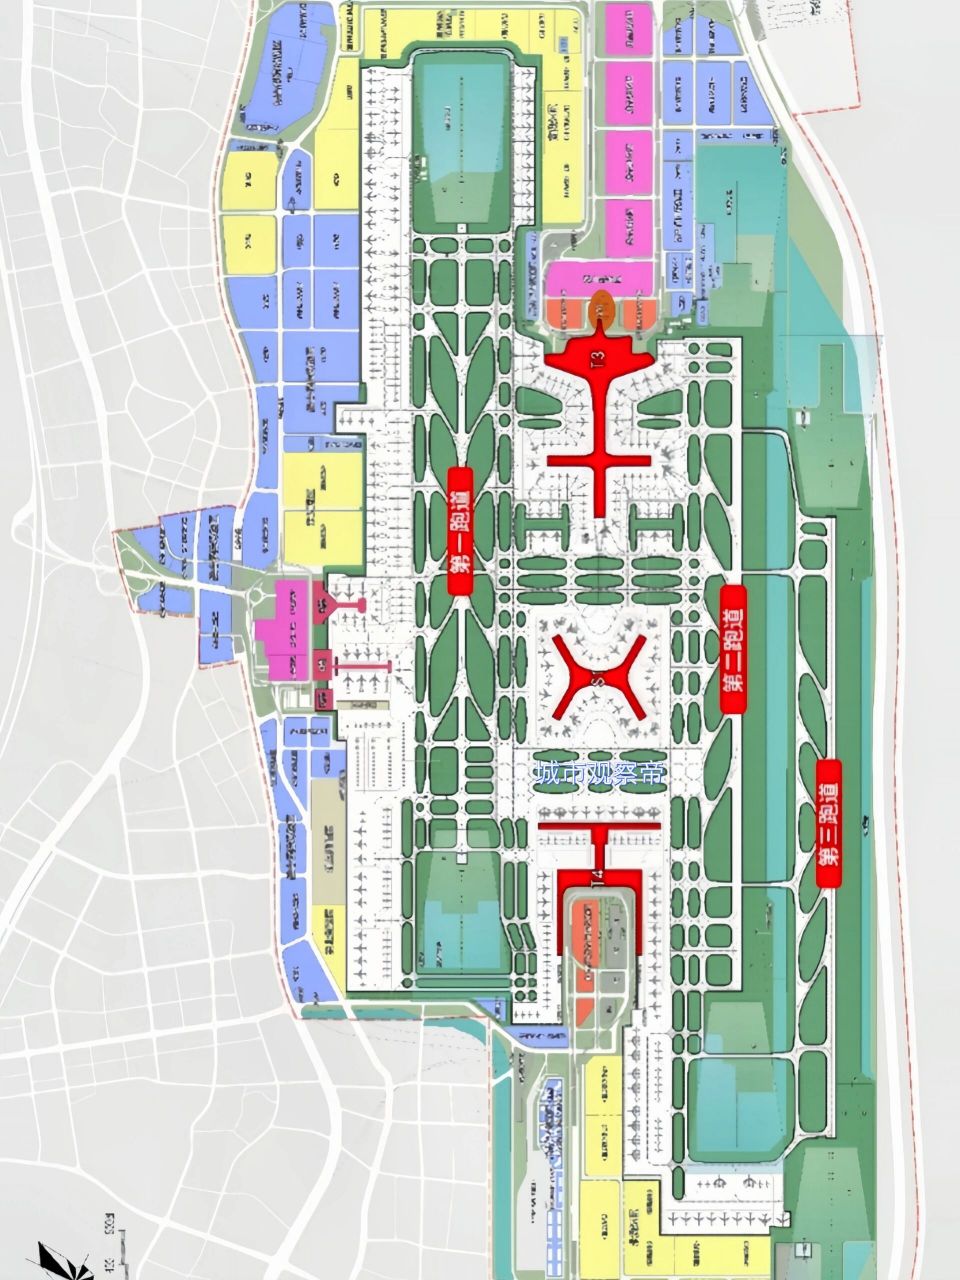 高坪机场第三跑道规划图片